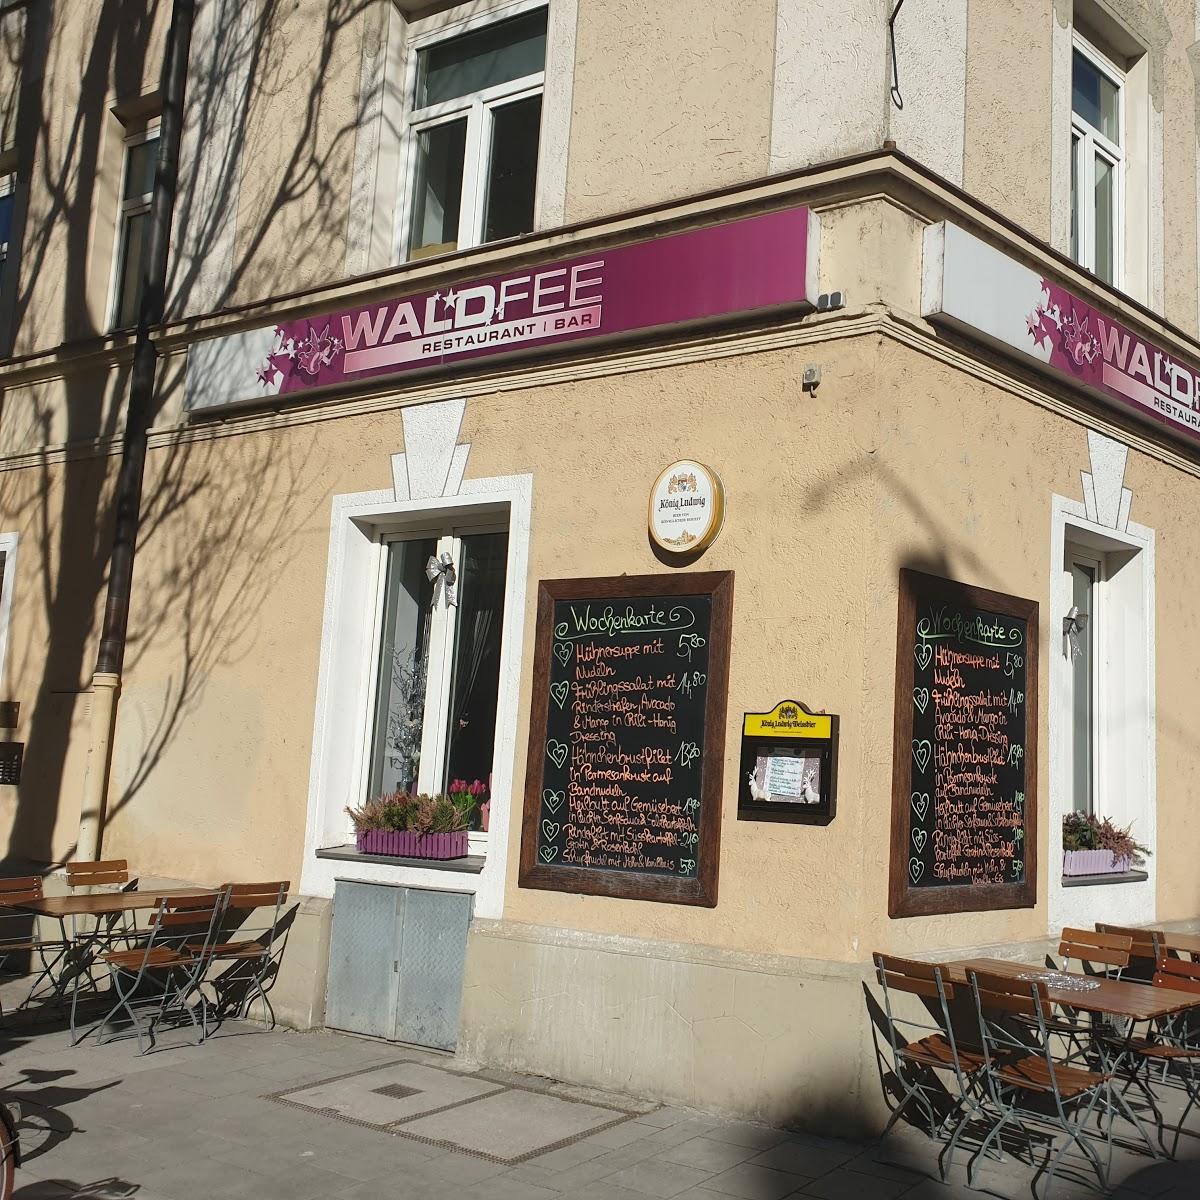 Restaurant "Waldfee" in München